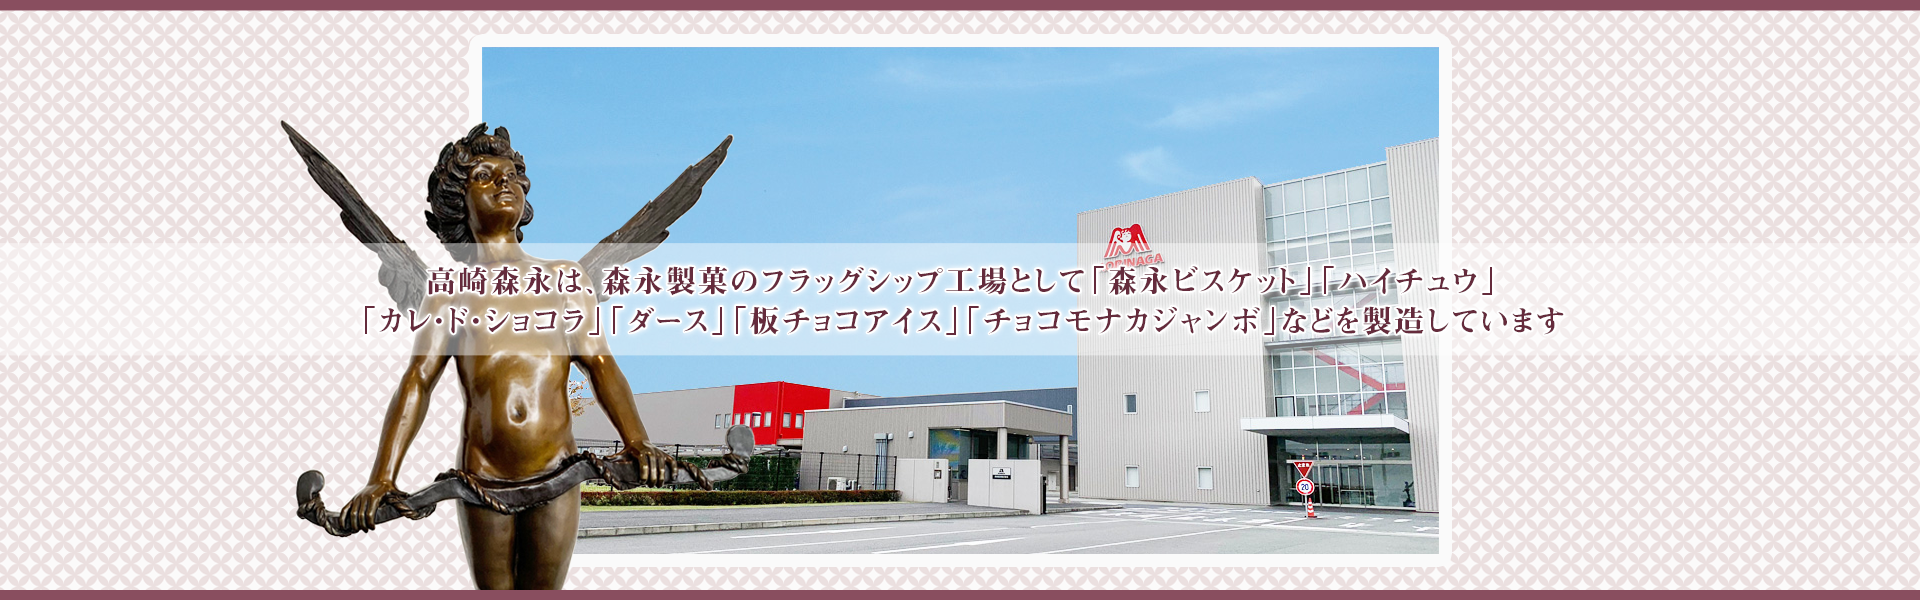 高崎森永は森永製菓のフラッグシップ工場として「森永ビスケット」「ハイチュウ」「カレ・ド・ショコラ」「ダース」「板チョコアイス」「チョコモナカジャンボ」などを製造しています。